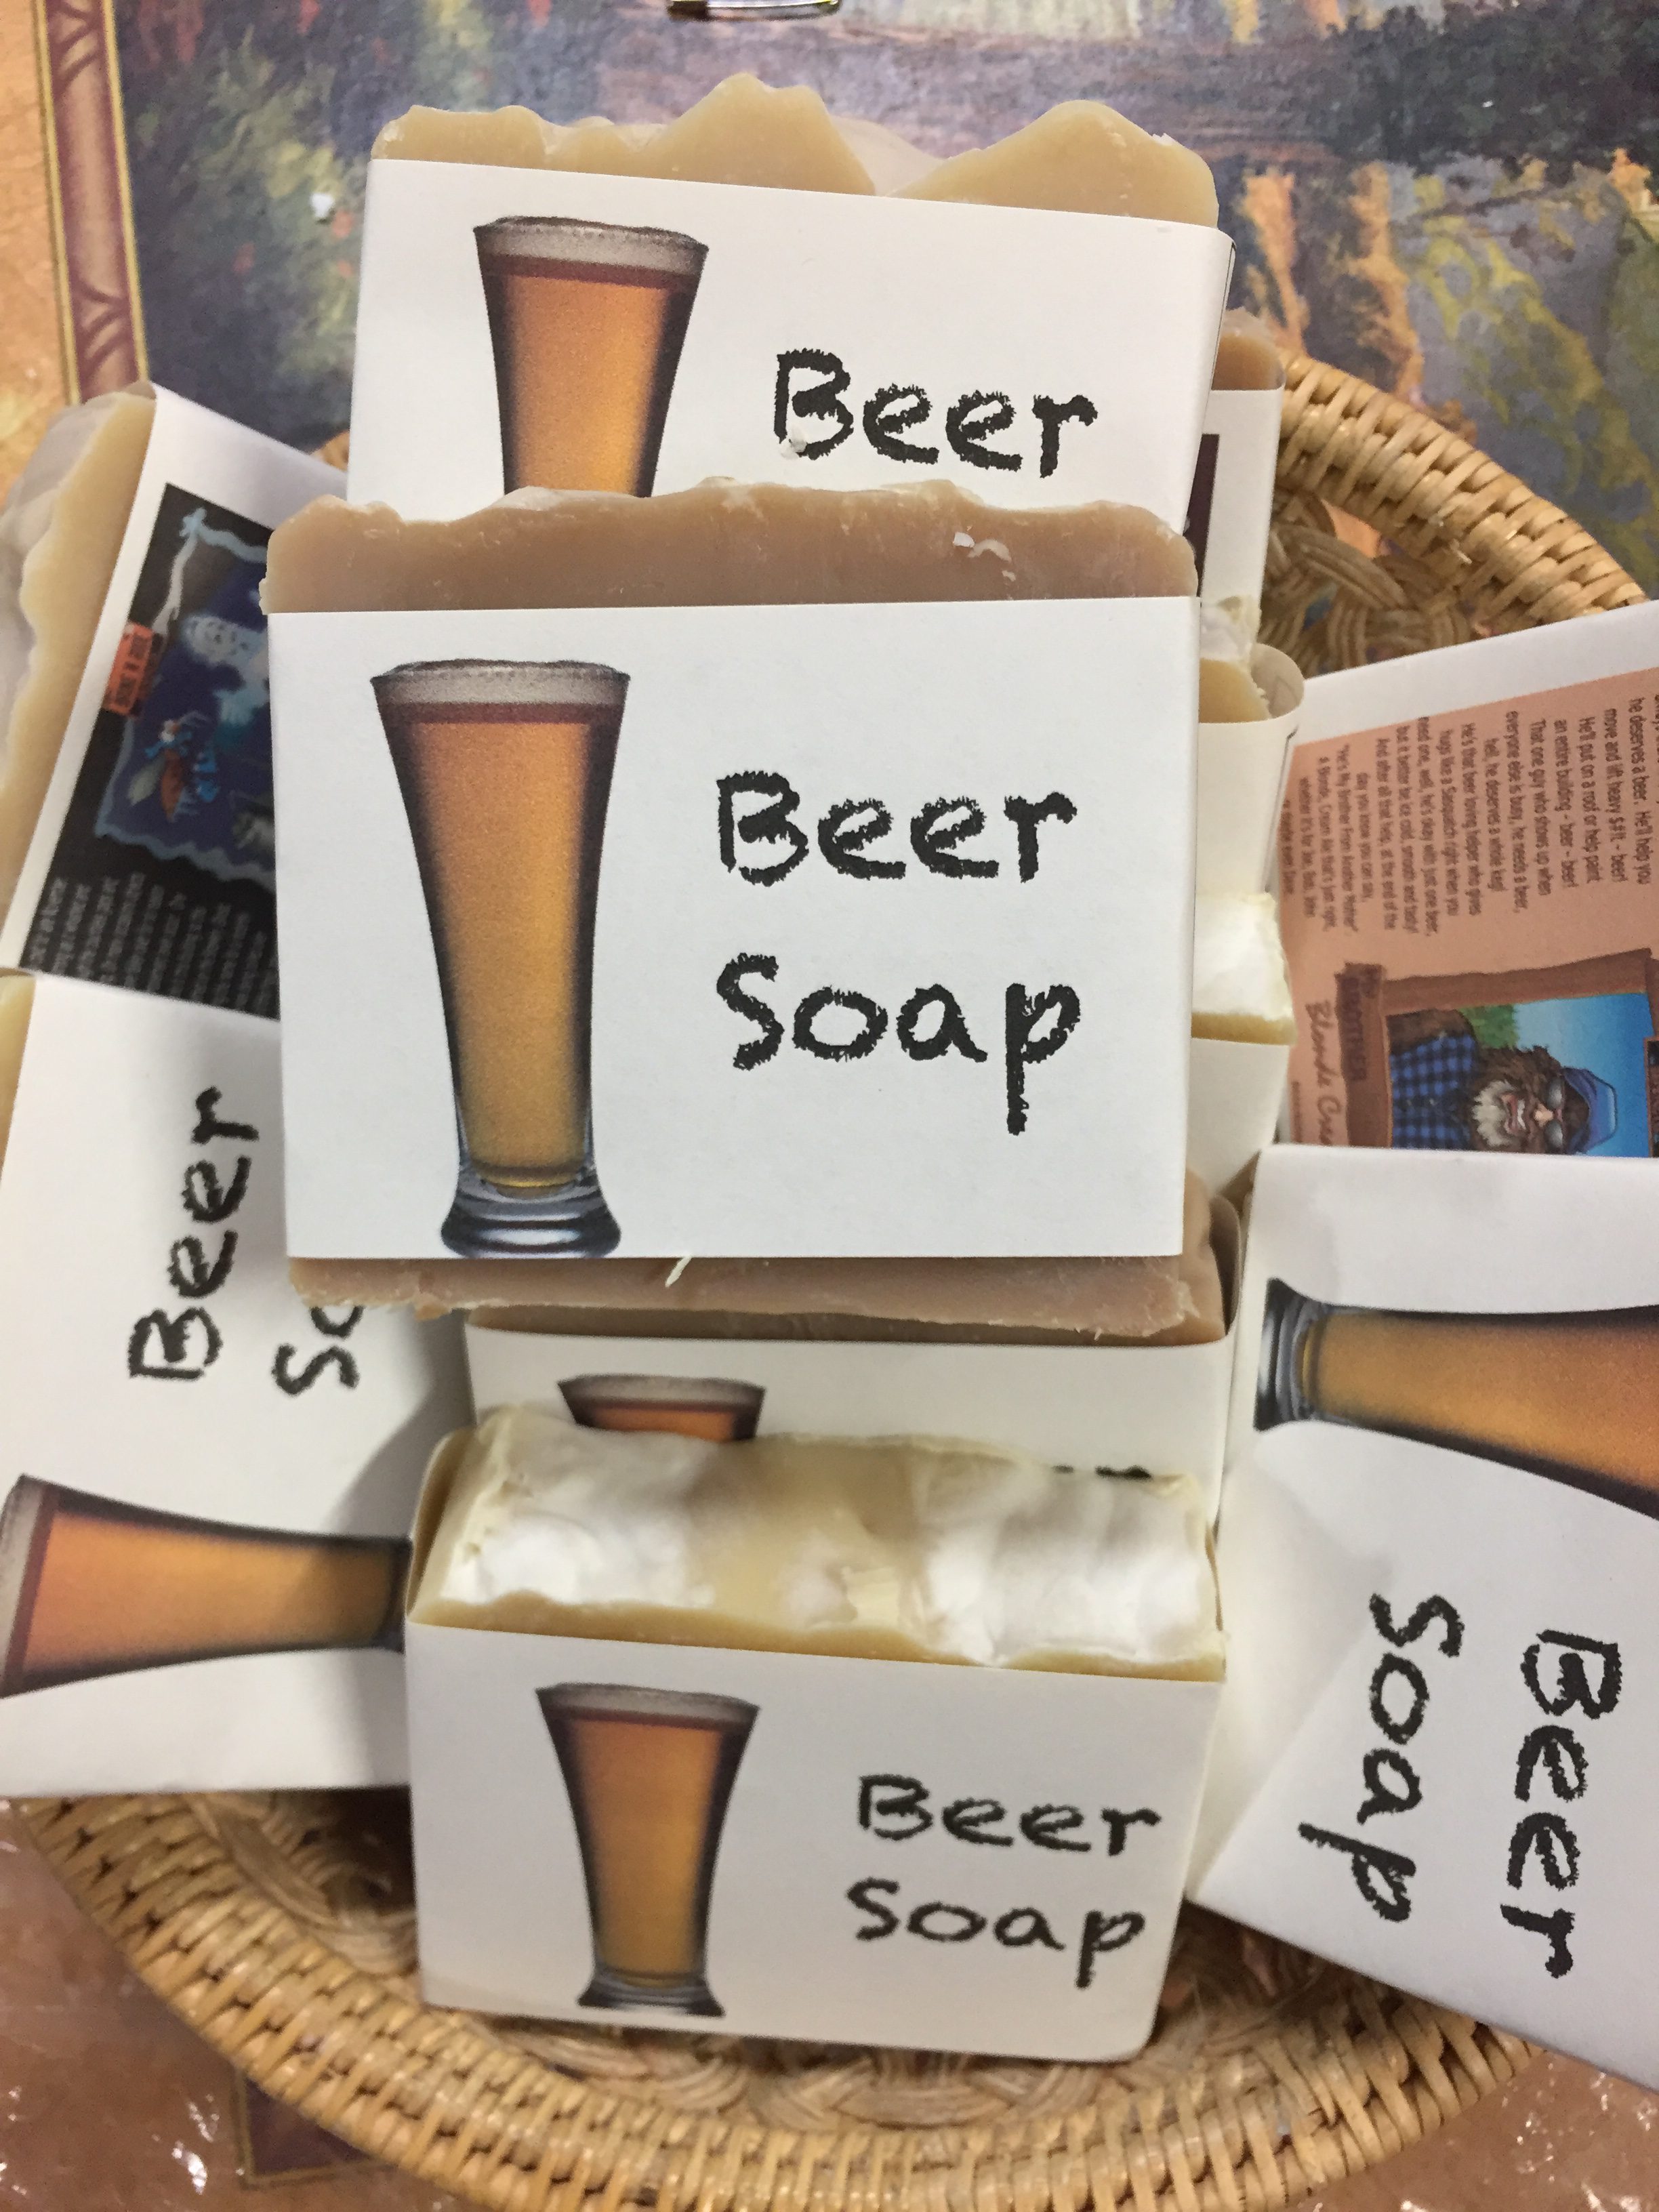 Benefits of Beer Soap